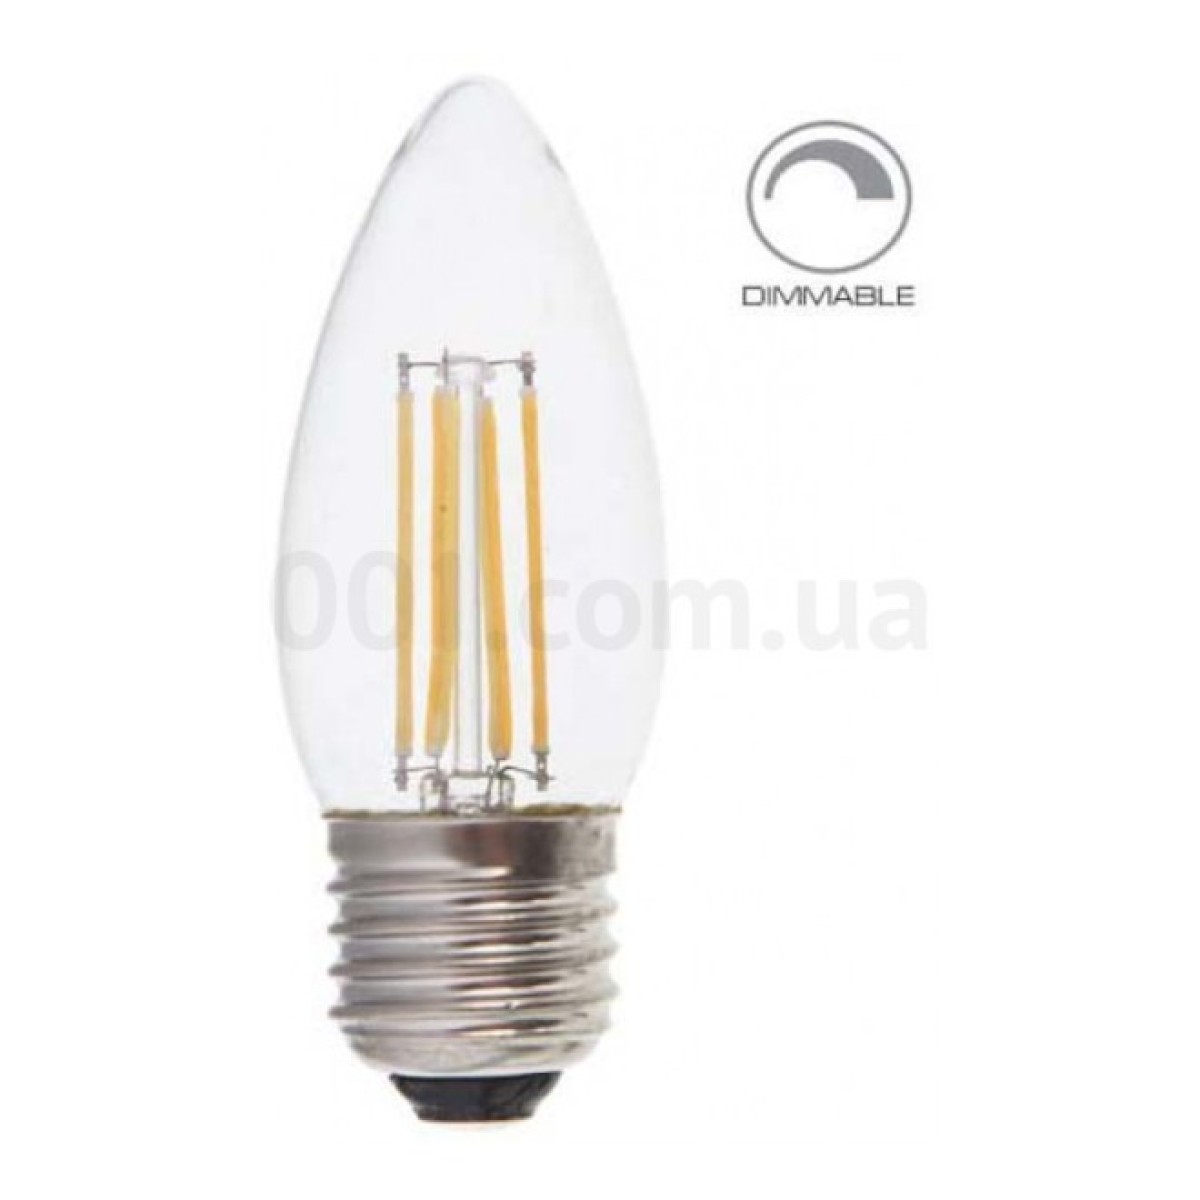 Світлодіодна лампа LB-68 DIMM C37 (свічка) філамент 4Вт 2700K E27, Feron 98_98.jpg